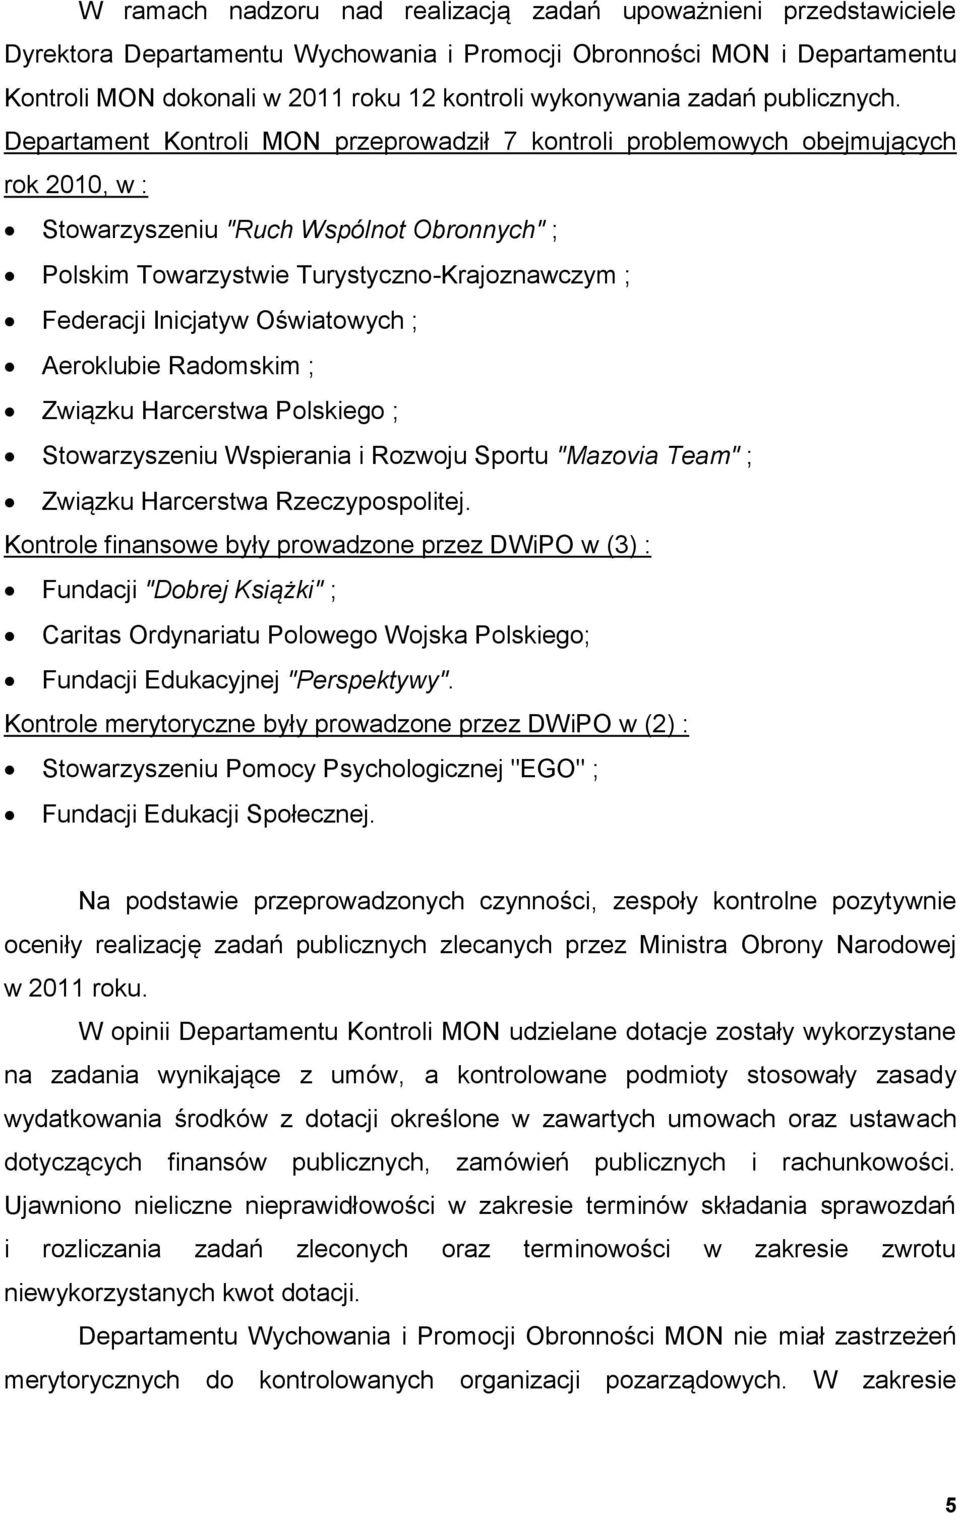 Departament Kontroli MON przeprowadził 7 kontroli problemowych obejmujących rok 2010, w : Stowarzyszeniu "Ruch Wspólnot Obronnych" ; Polskim Towarzystwie Turystyczno-Krajoznawczym ; Federacji